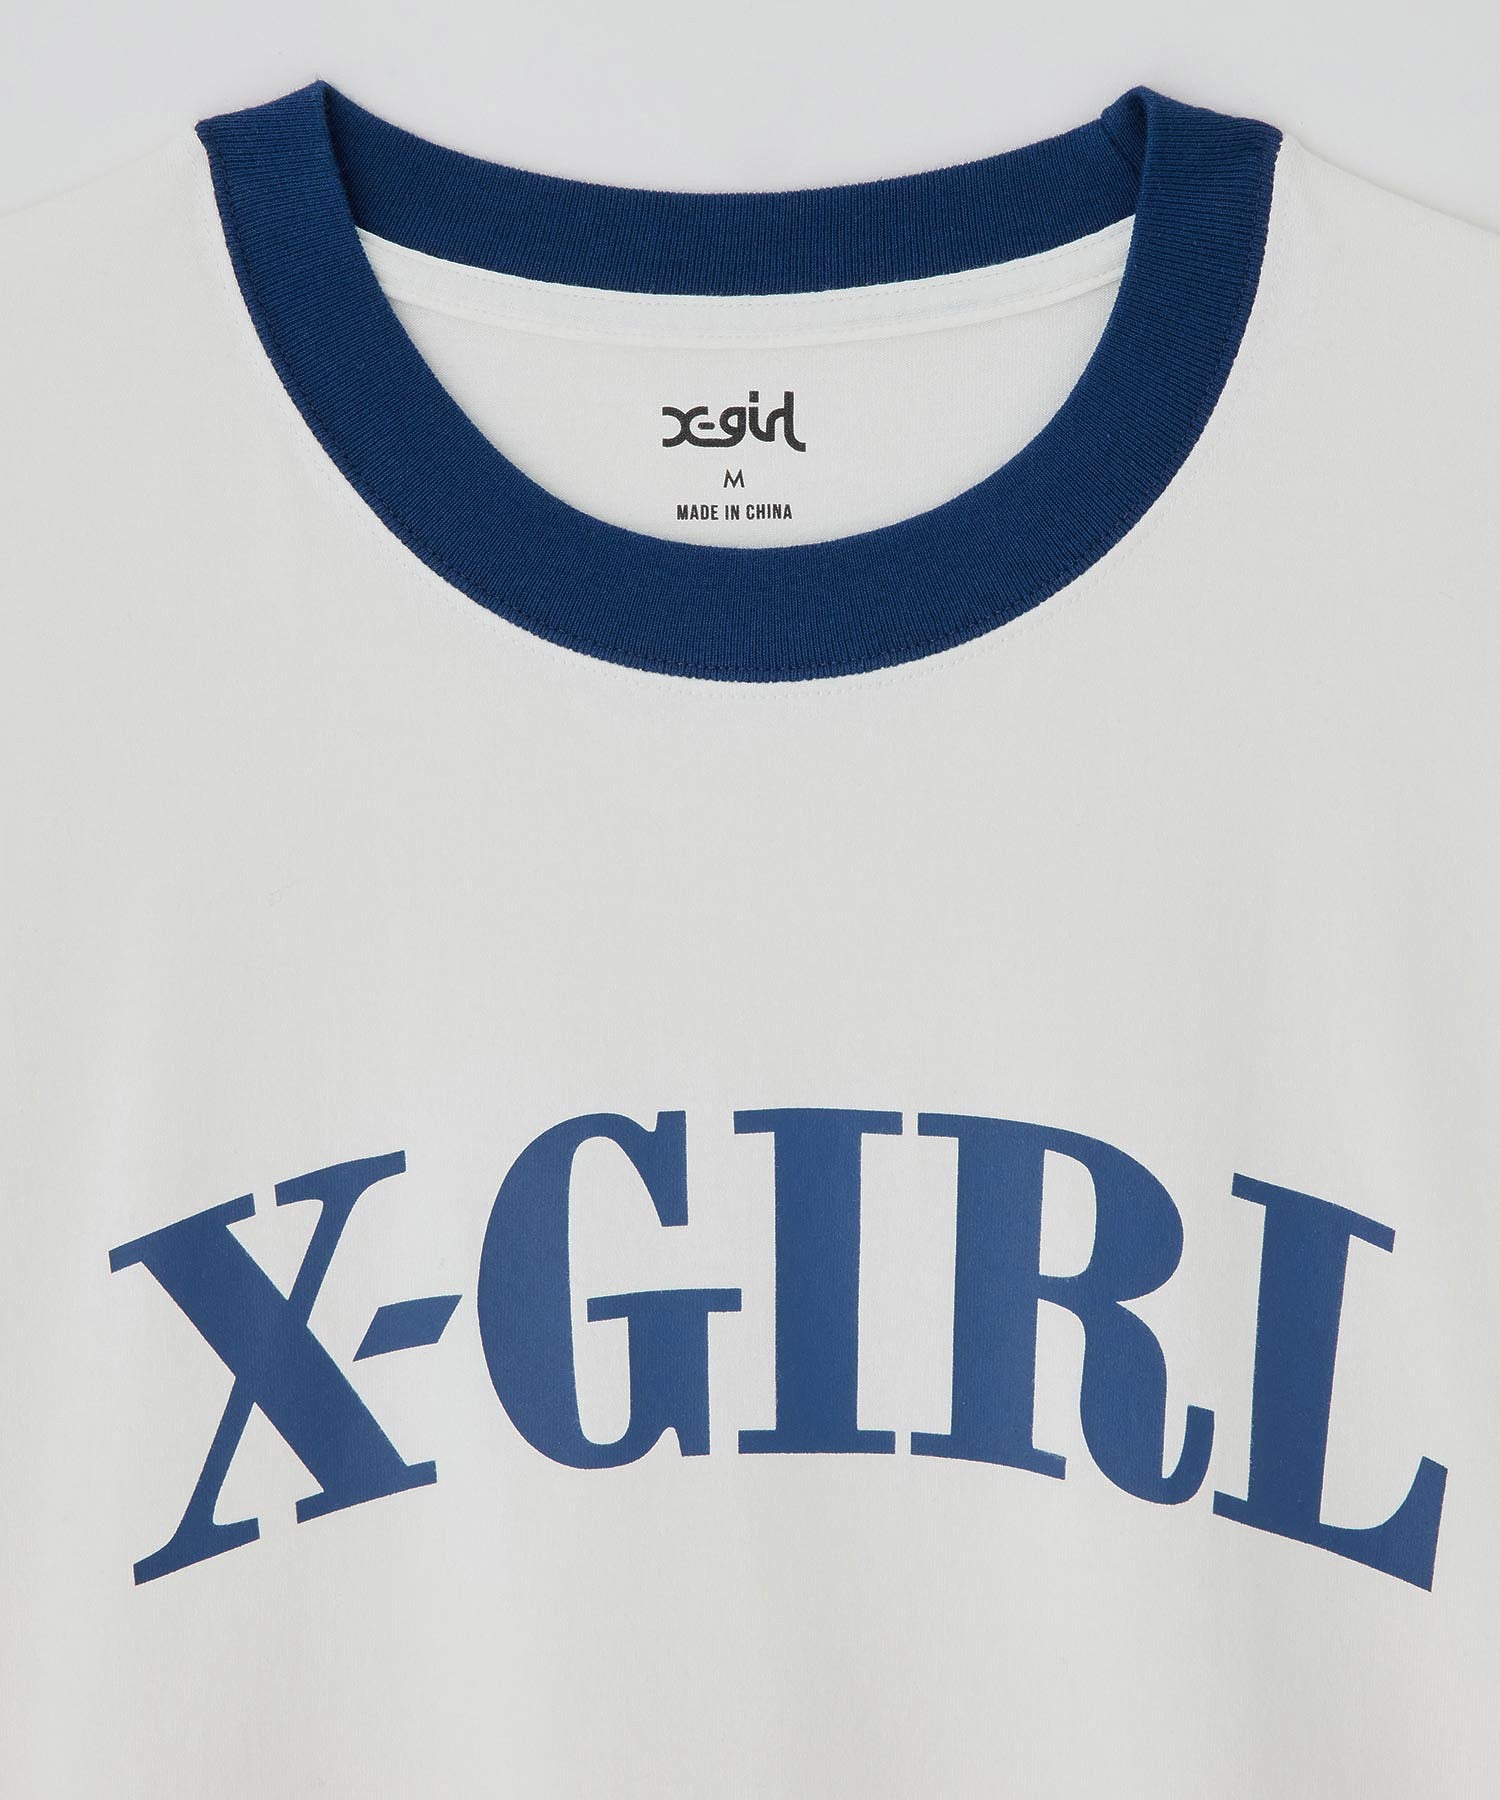 RINGER S/S BIG TEE DRESS X-girl